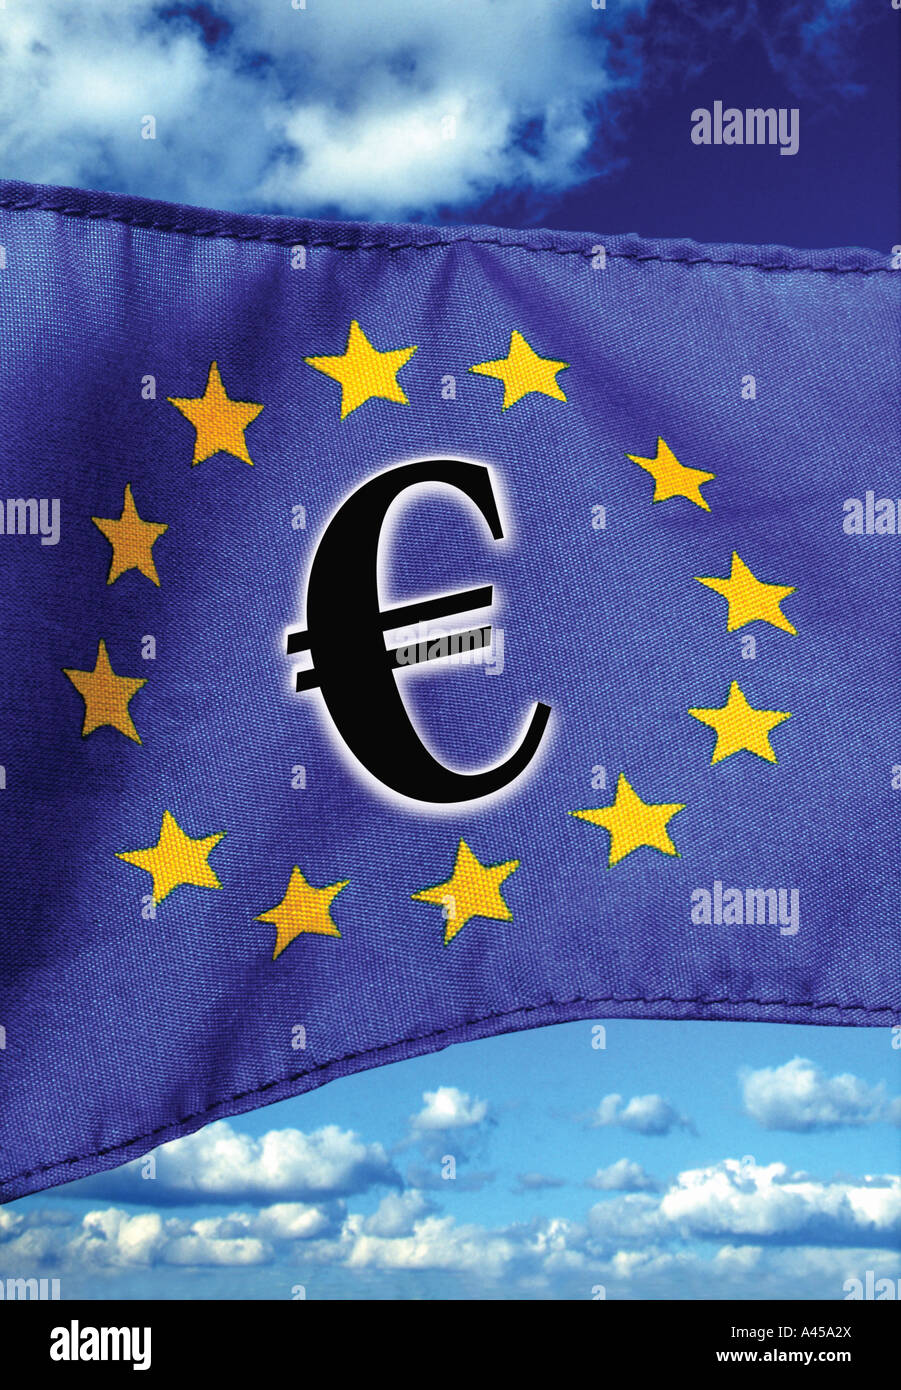 European EU flag with Euro symbol Stock Photo